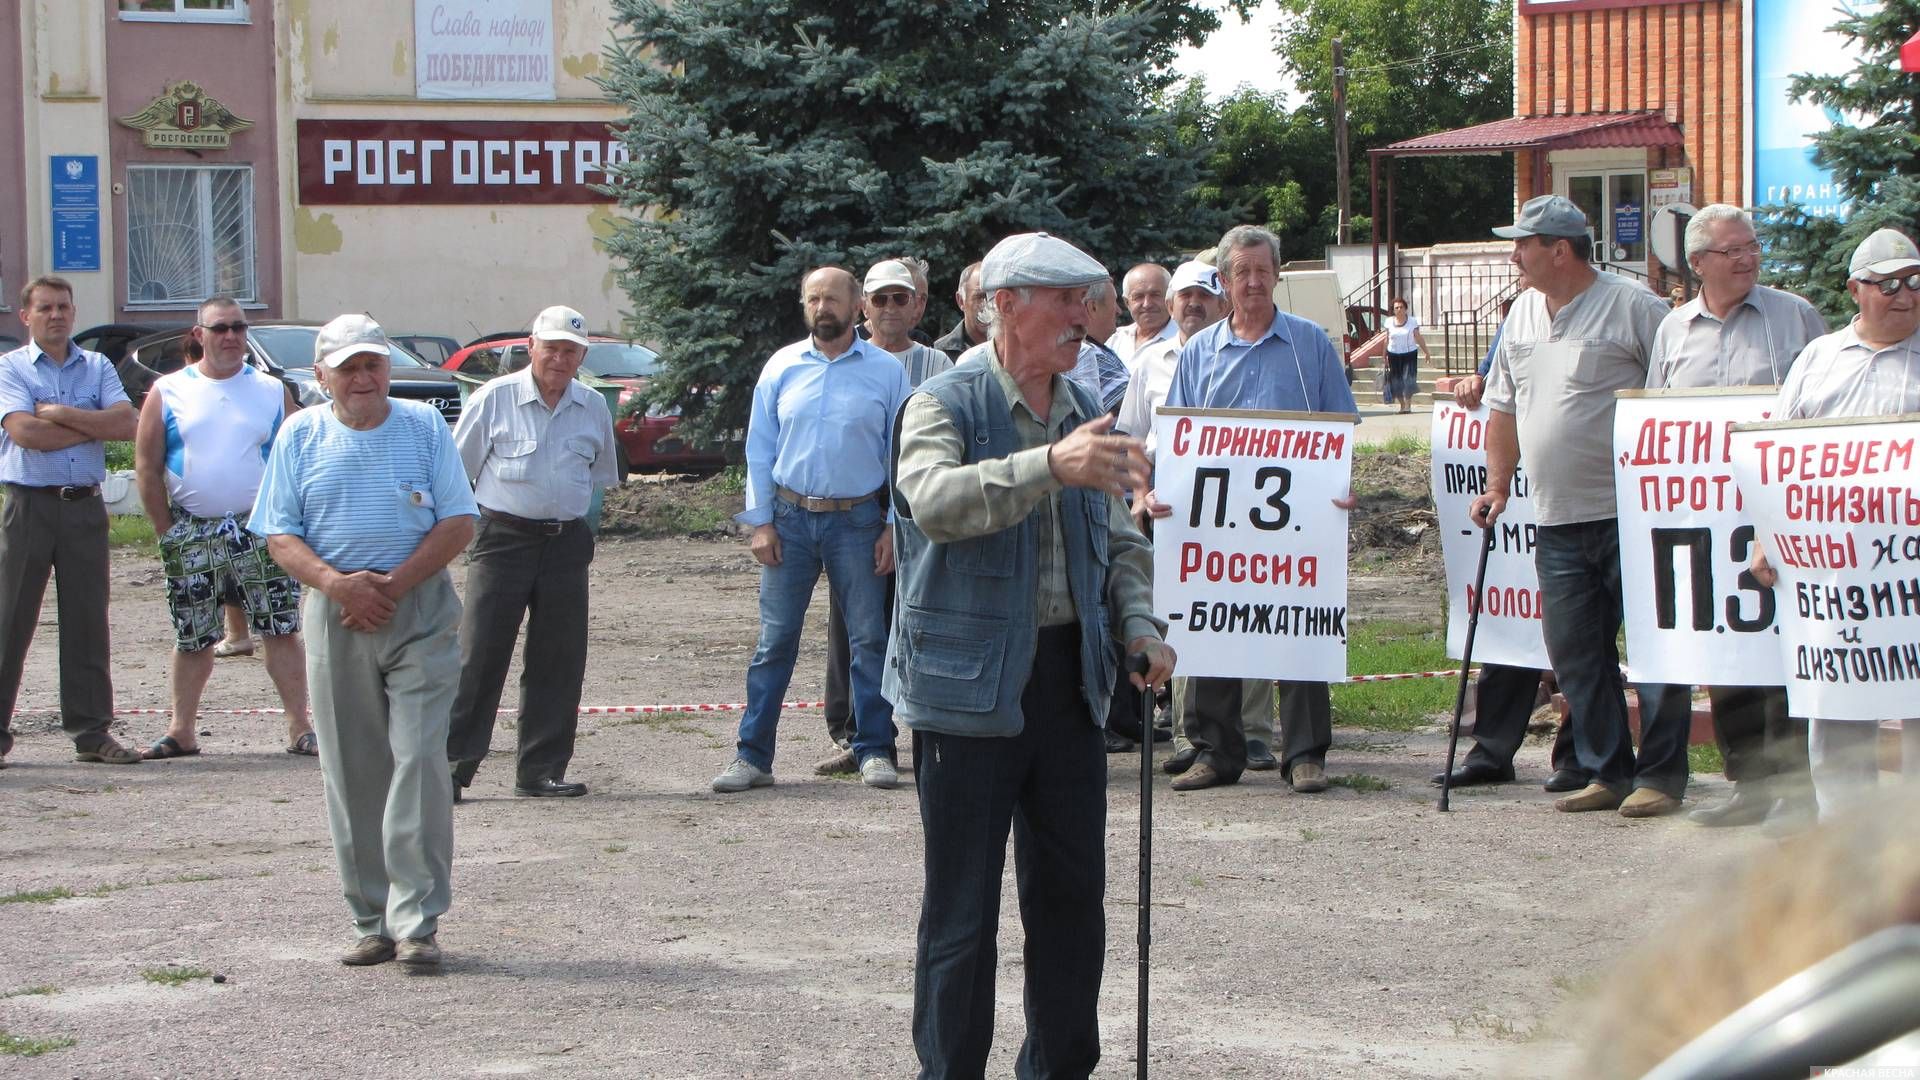 Митинг против пенсионной реформы в городе Мглин Брянской области 31 июля 2018 г.